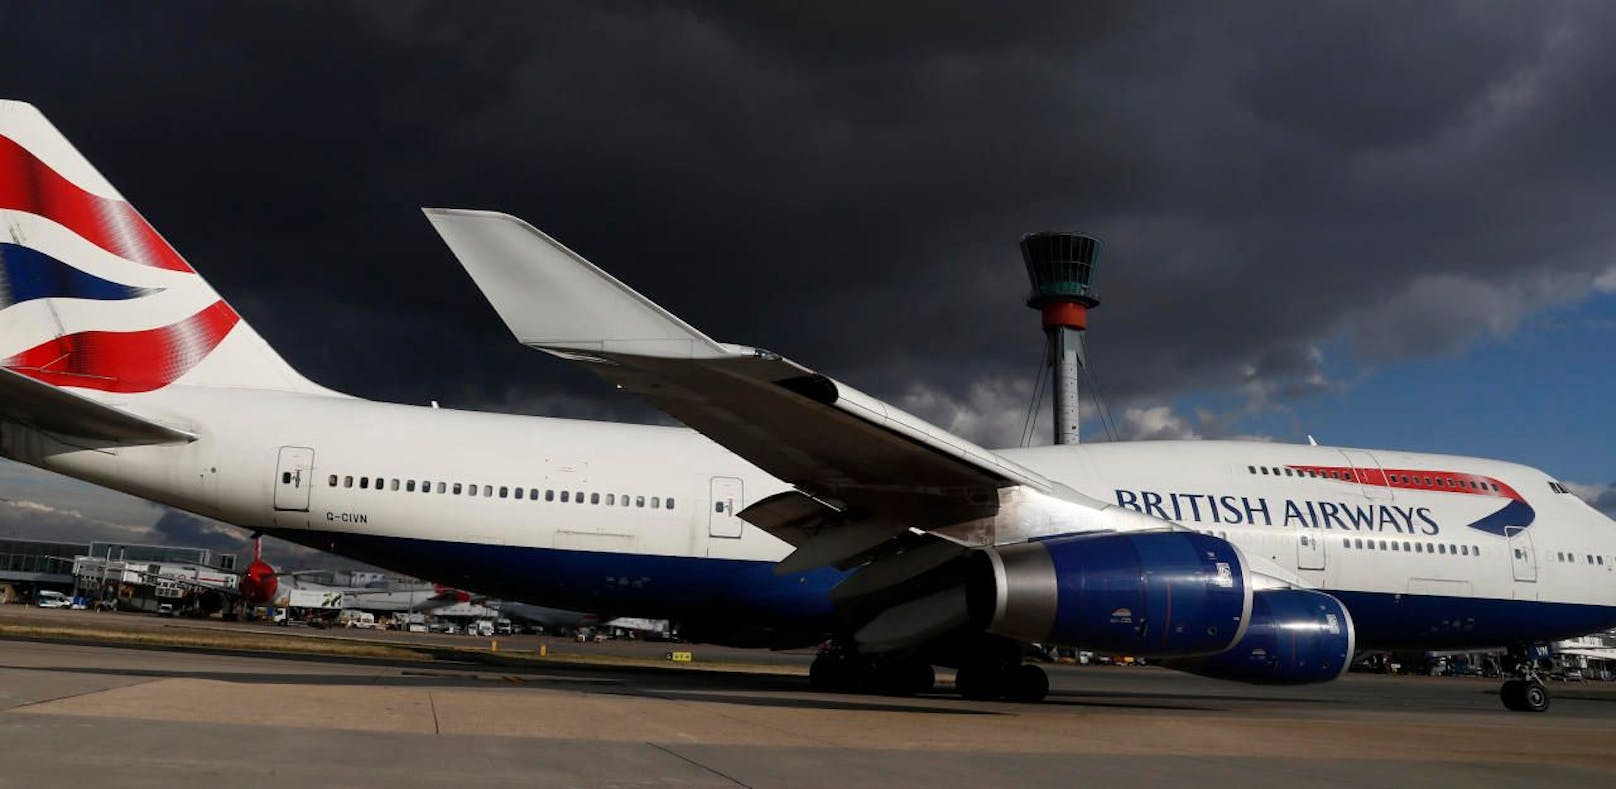 Eine British-Airways-Maschine am Flughafen London Heathrow (Smybolbild).